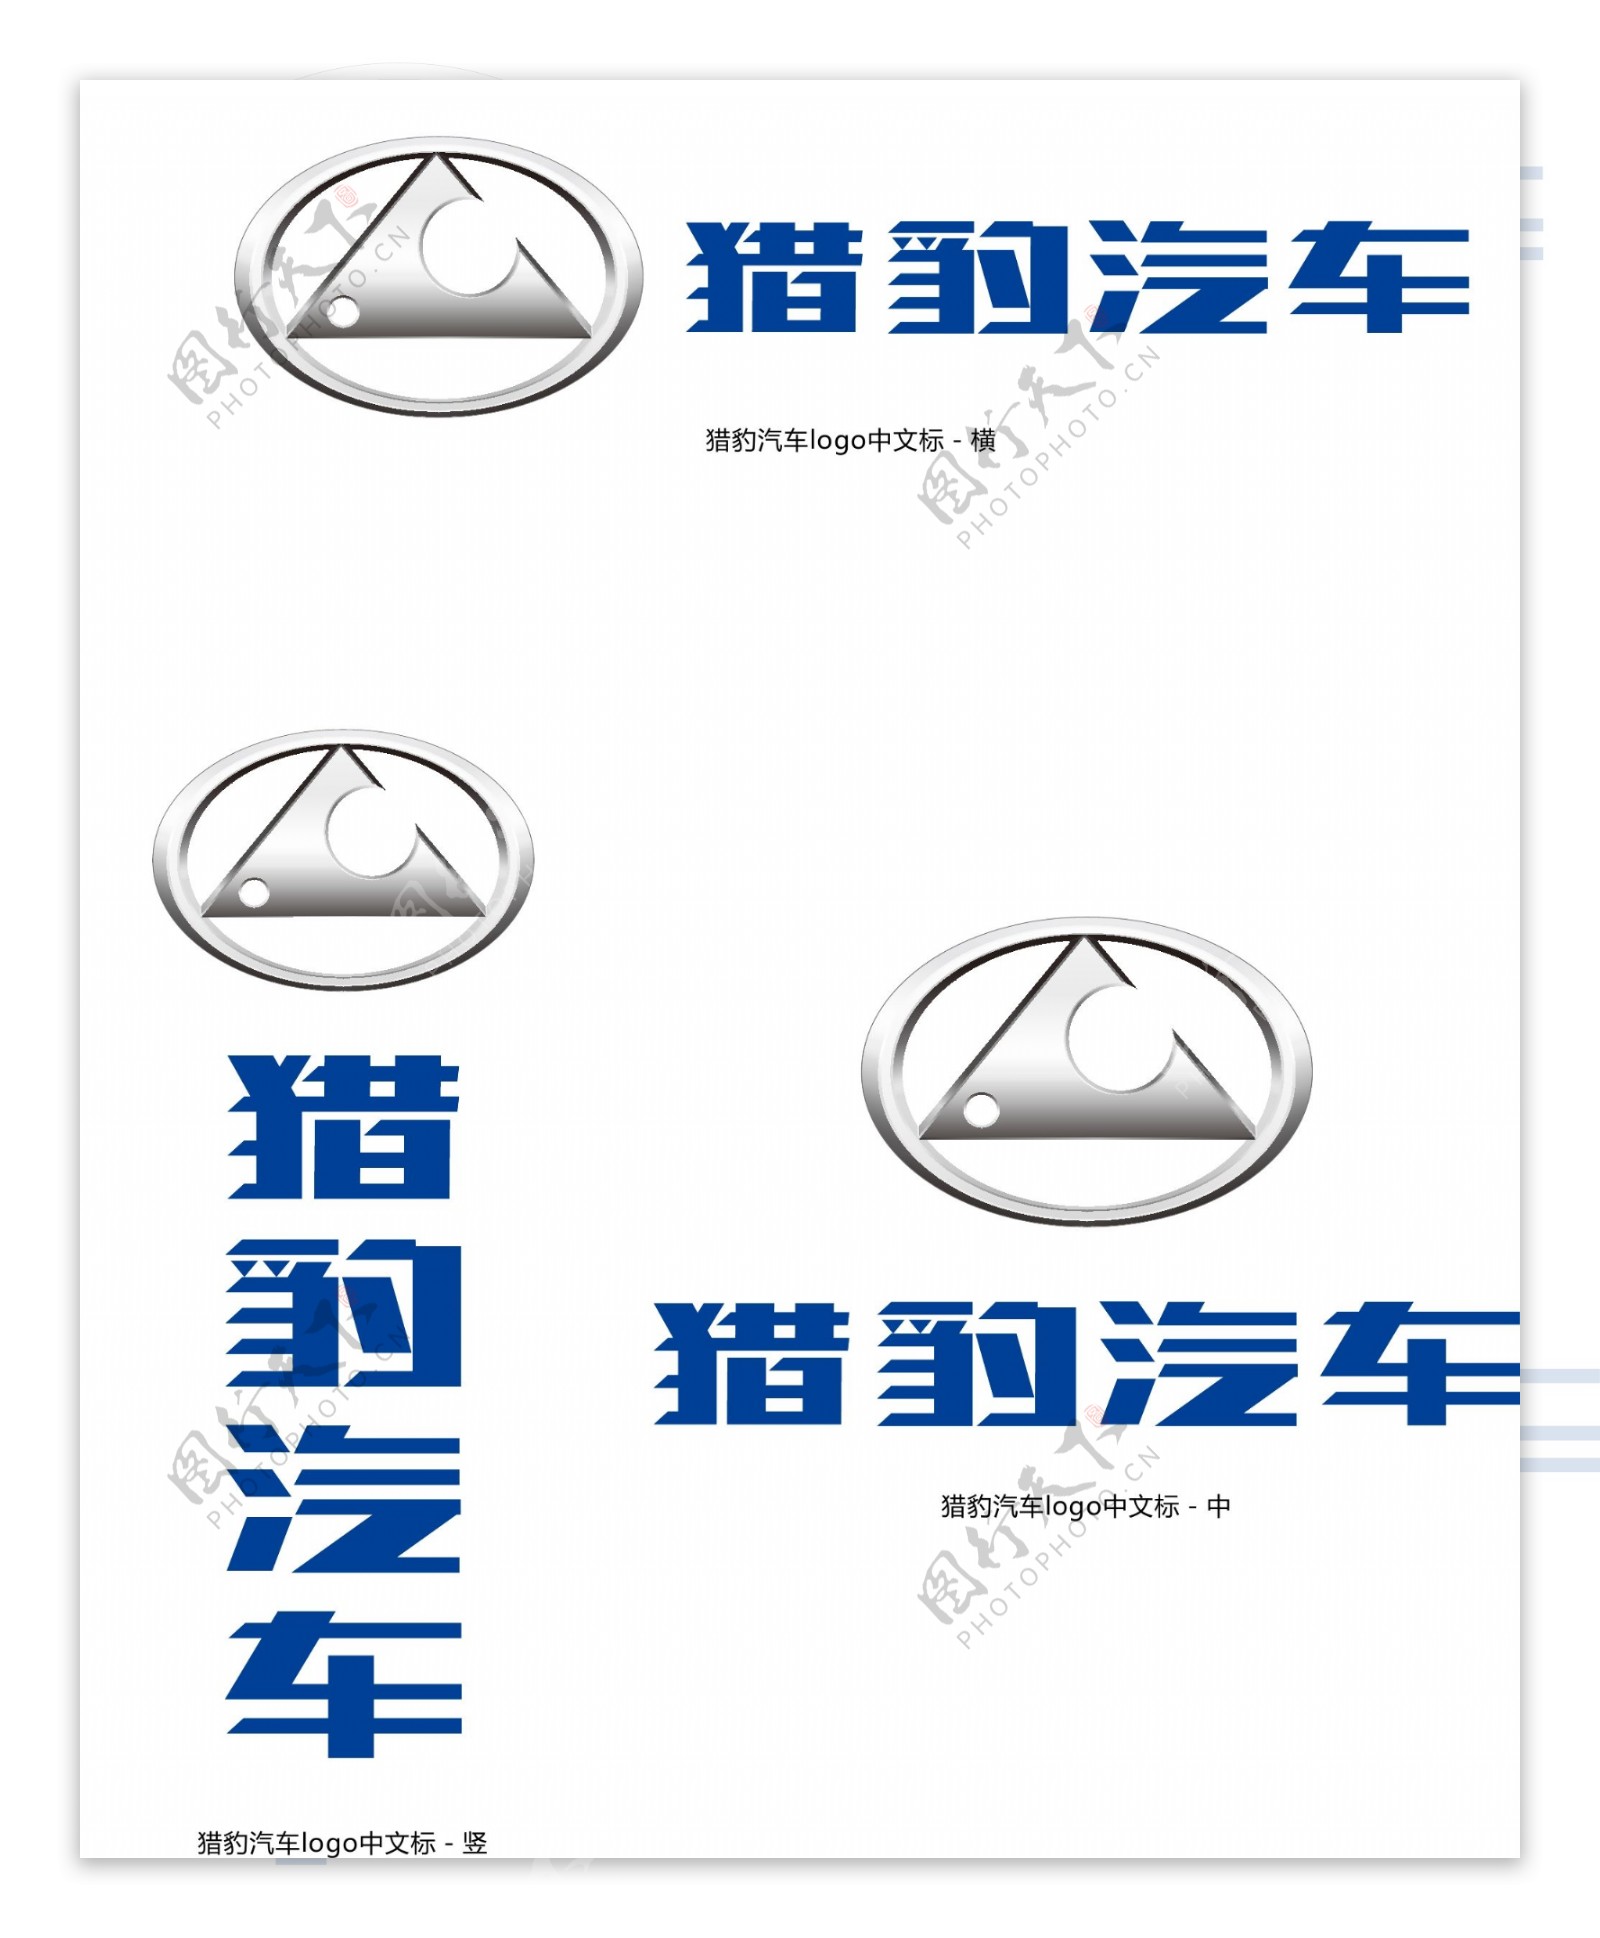 猎豹汽车LOGO纯中文版